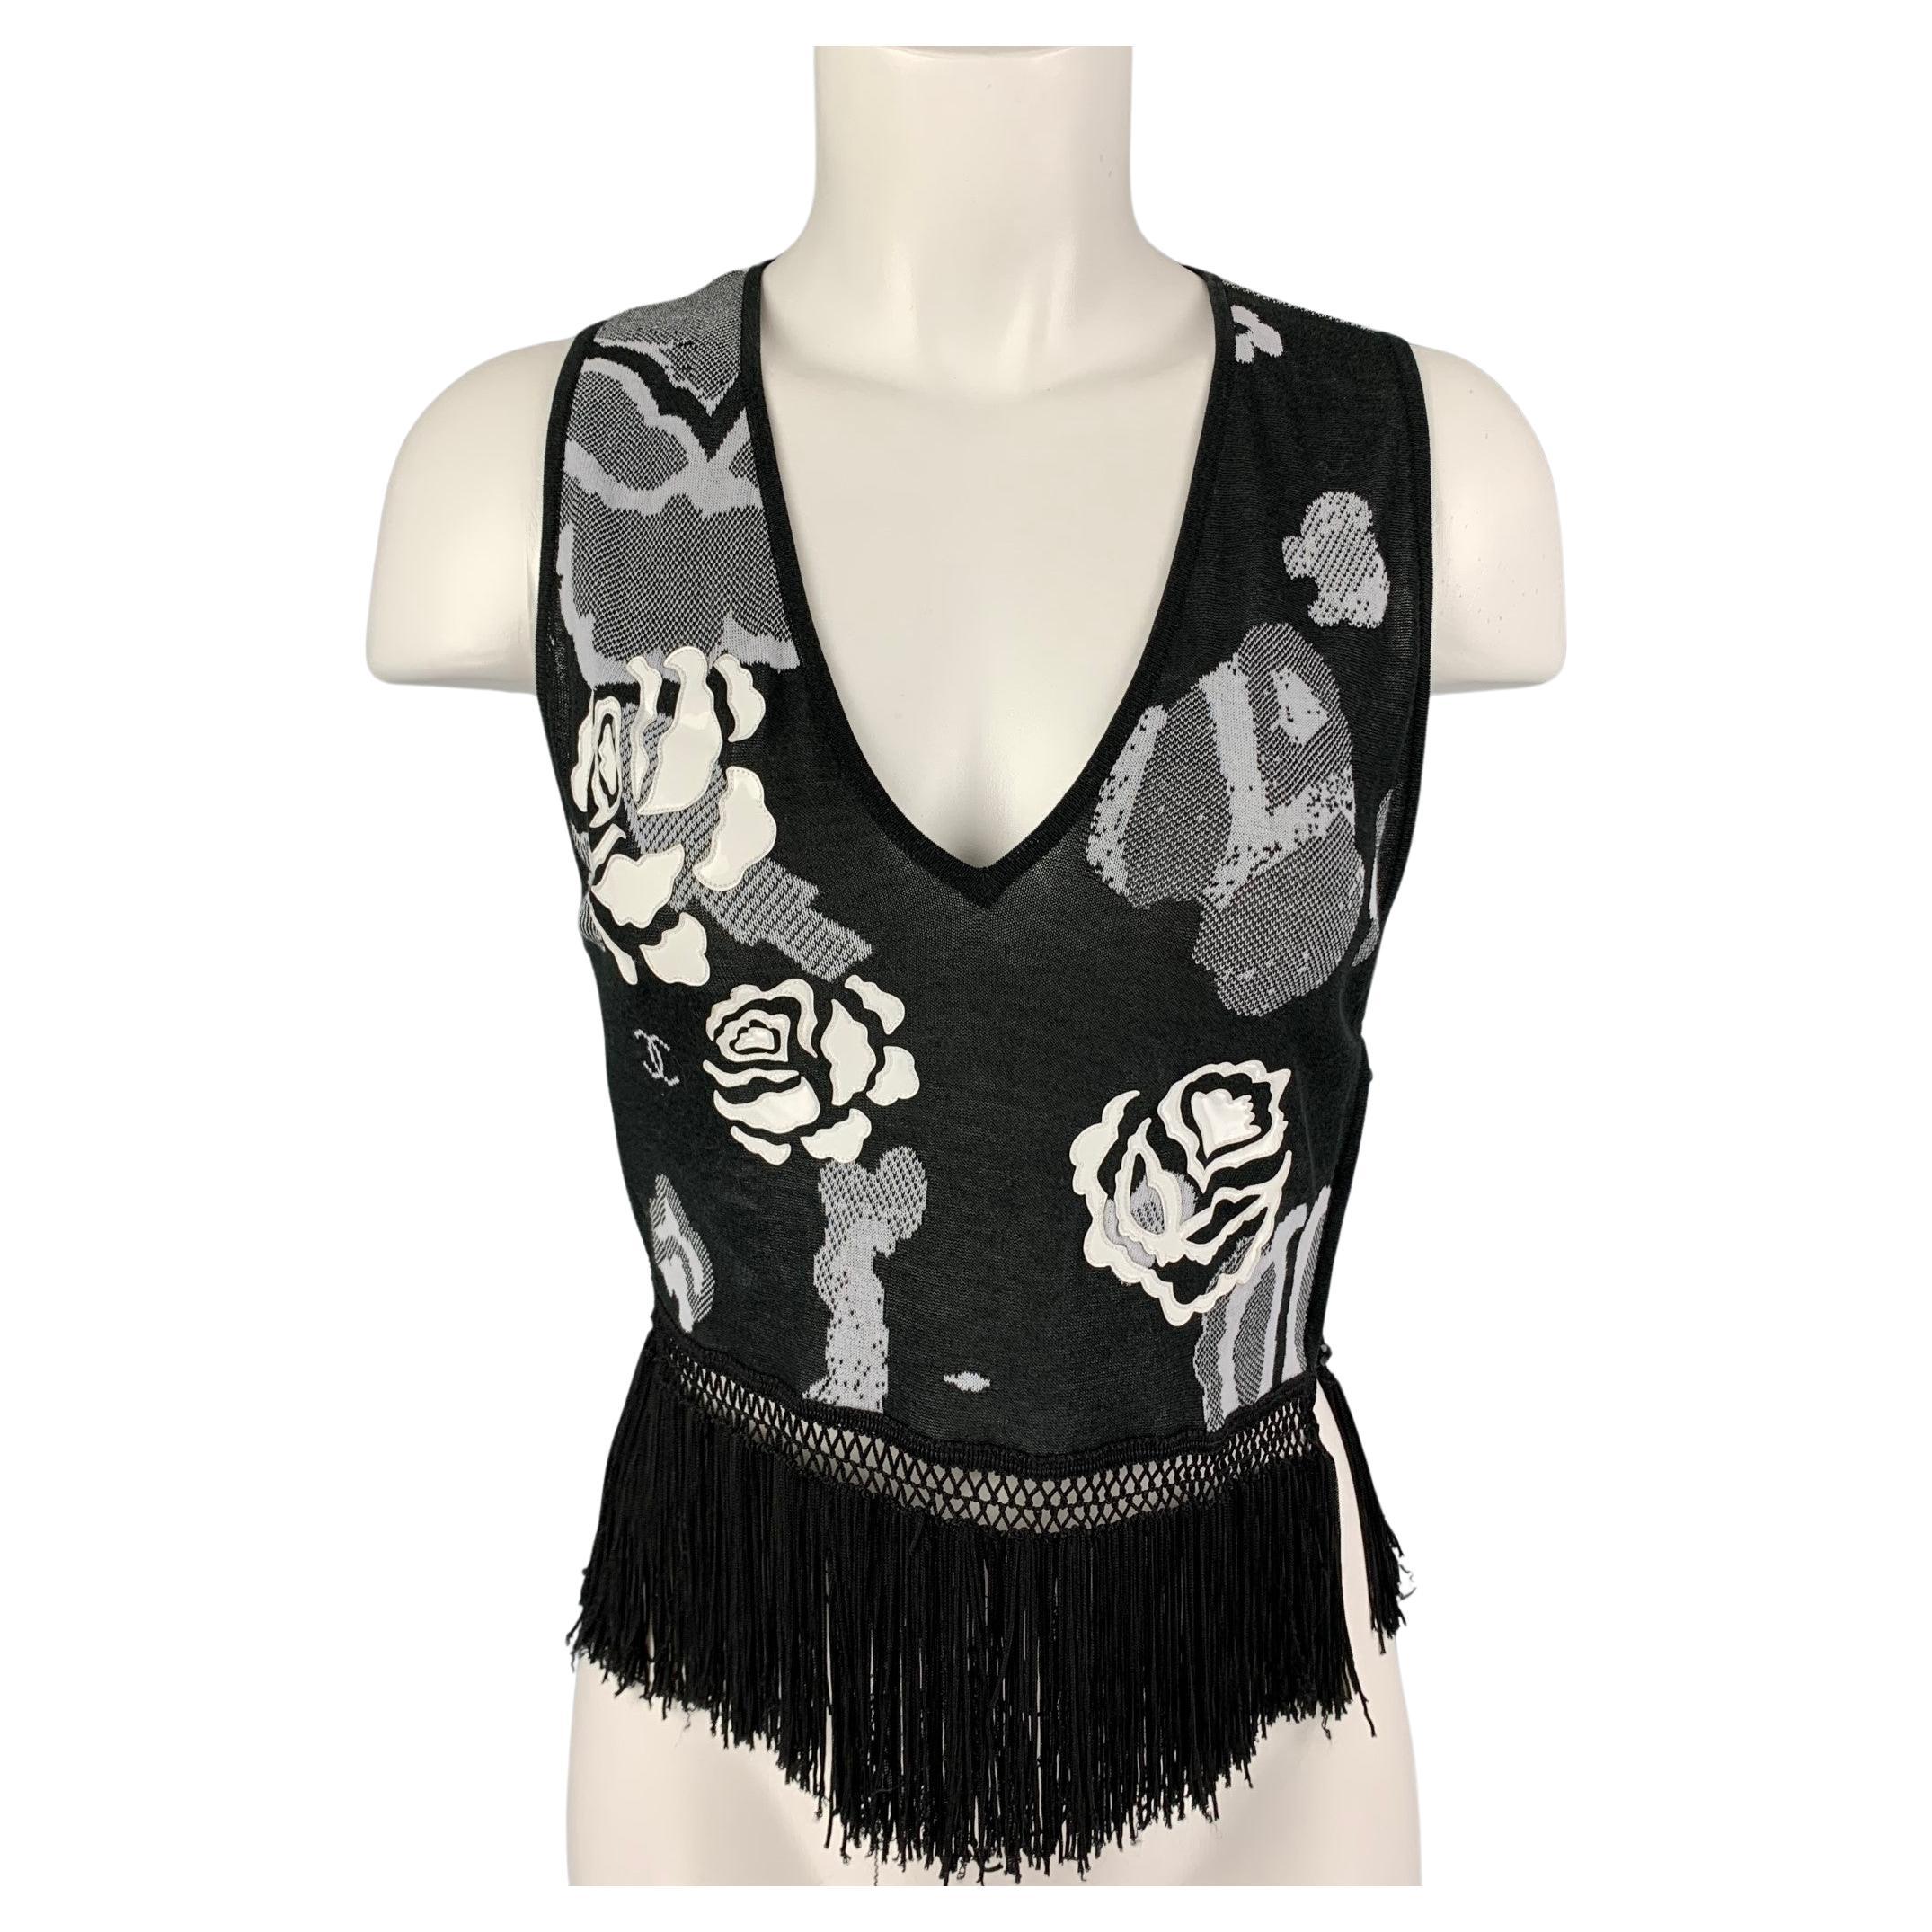 CHANEL Size M Black & White Cotton Rayon Floral Sleeveless Dress Top